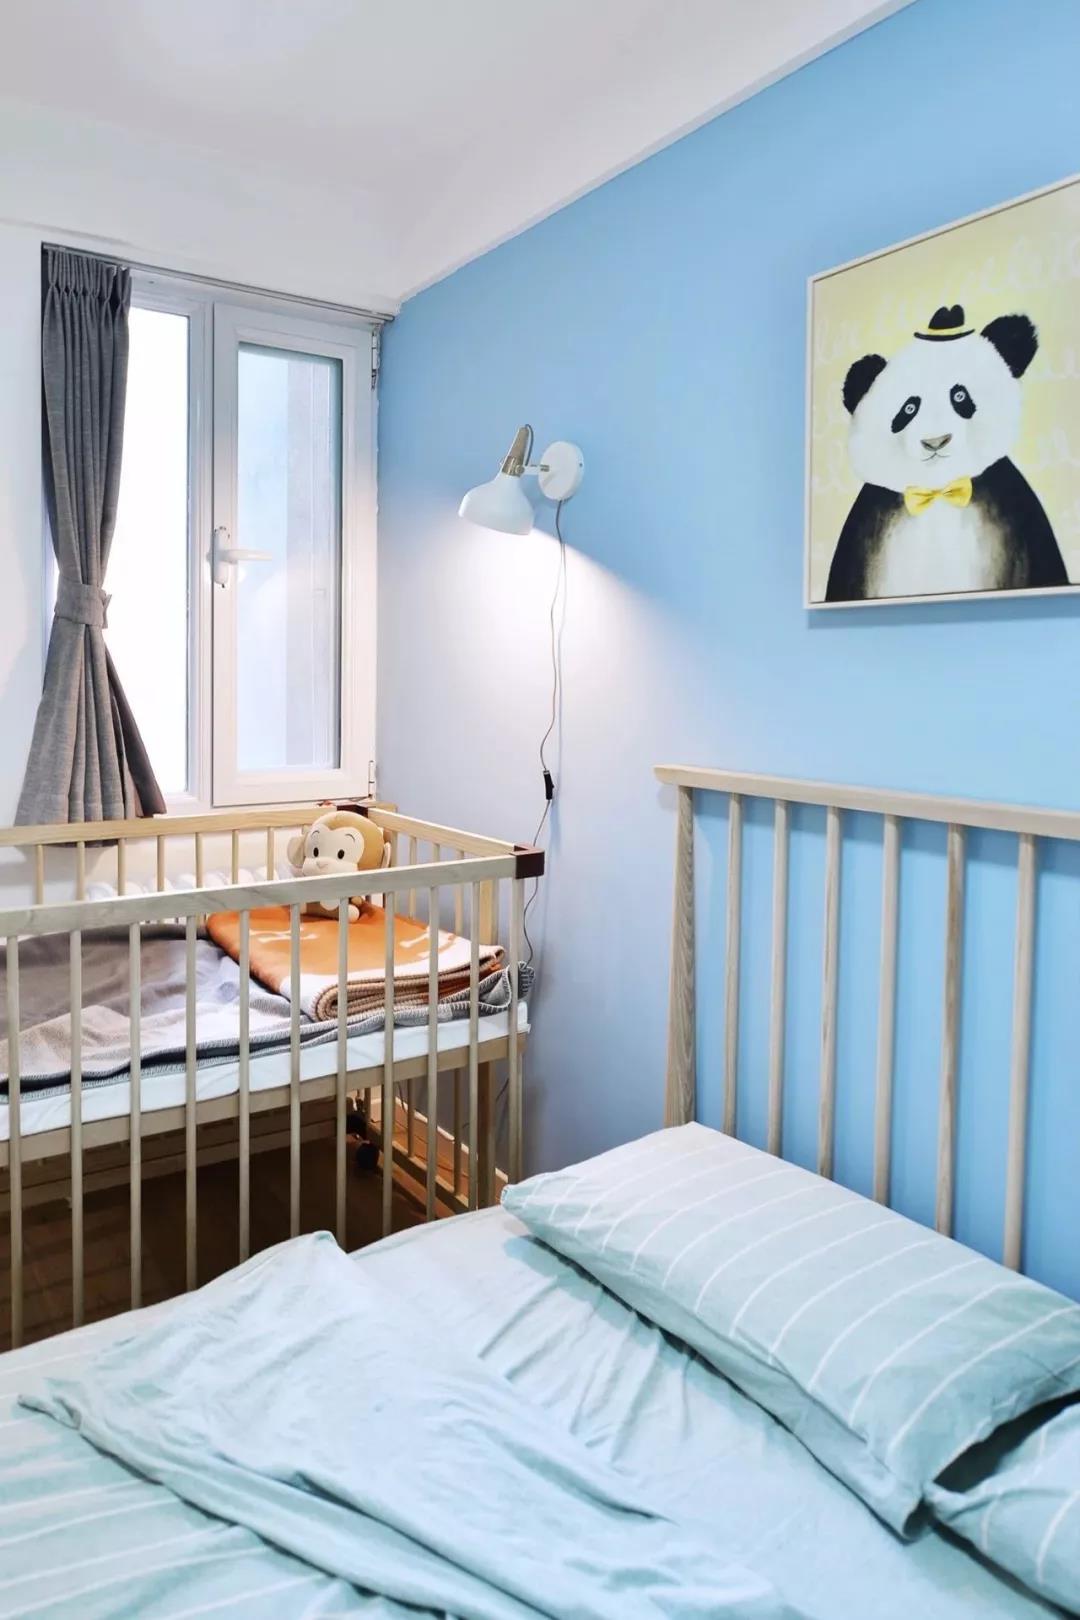 儿童房整体使用淡蓝色为主题，壁灯、装饰画让空间充满玩乐趣味。